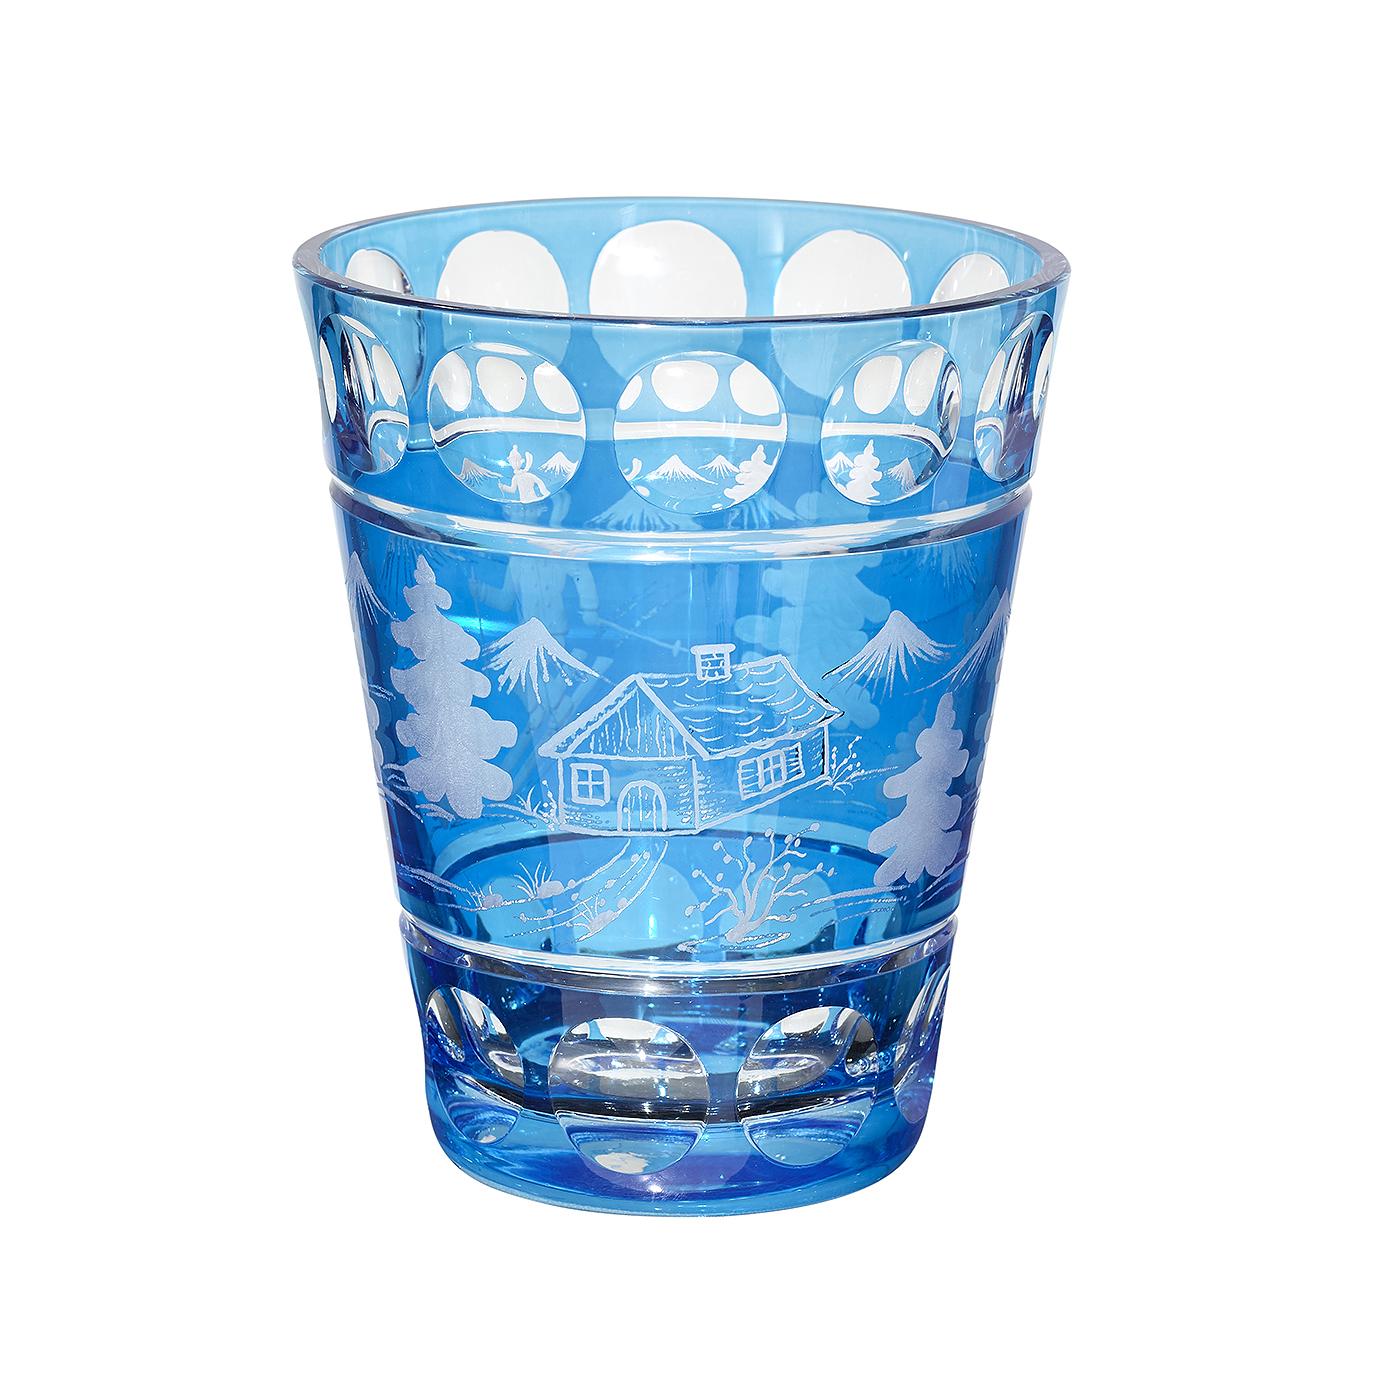 Vase en verre soufflé à la bouche, en cristal bleu, avec décor de skiier plié à la main. Le décor est celui d'un skieur avec des arbres, des montagnes et une cabane gravés tout autour. Entièrement soufflé et gravé à la main en Bavière, en Allemagne.